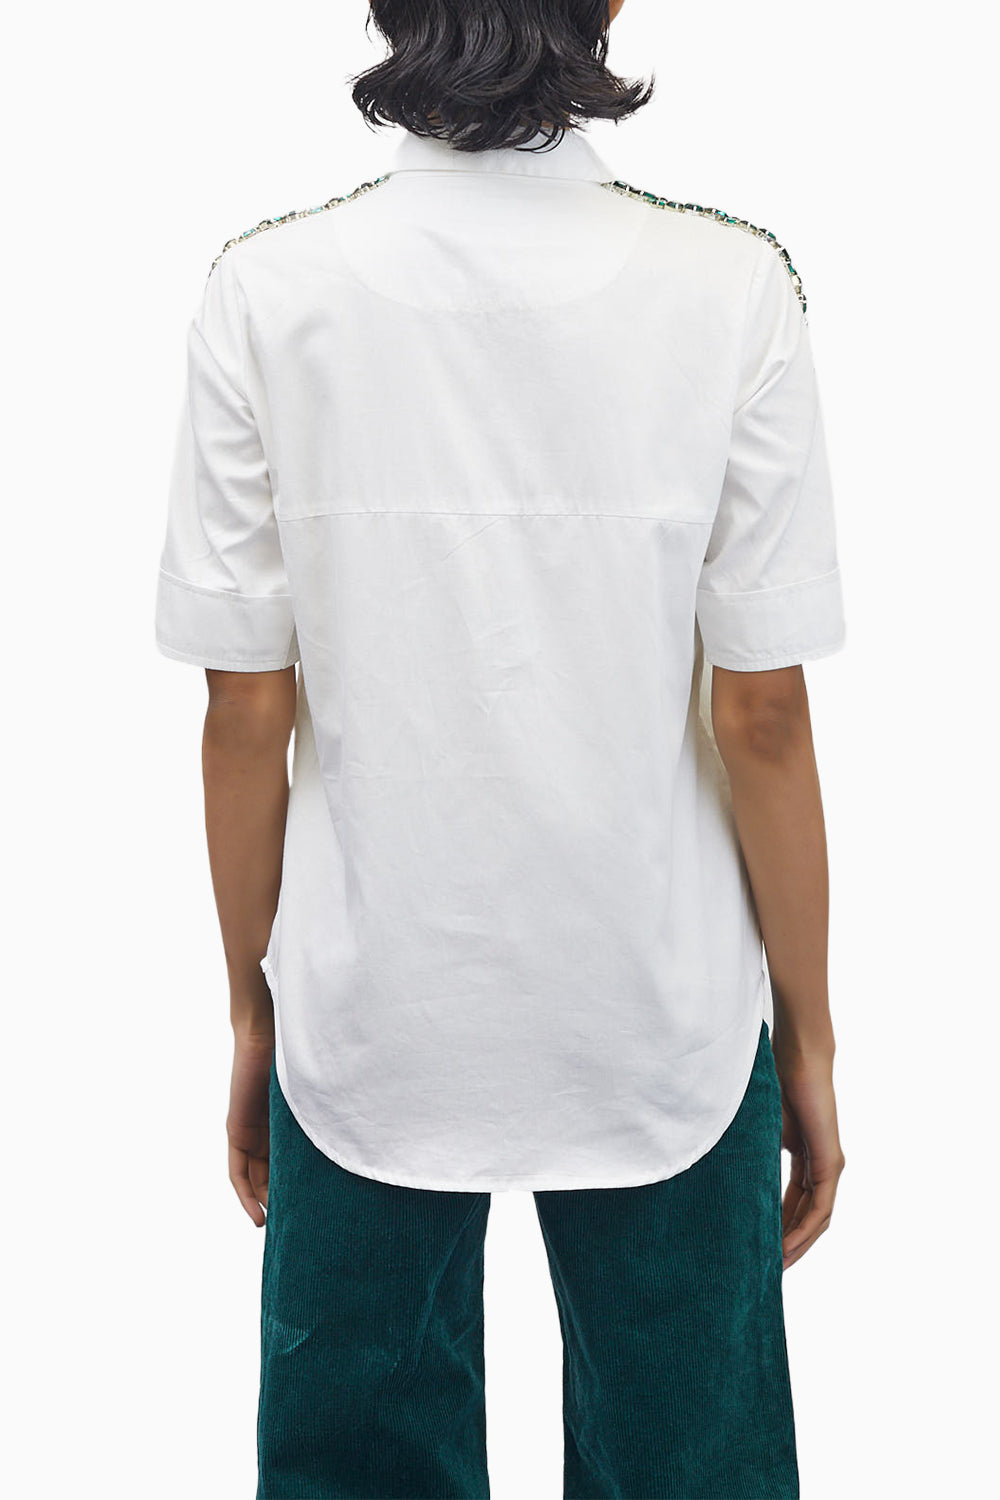 White Swarovski Emerald Ribbon Shirt